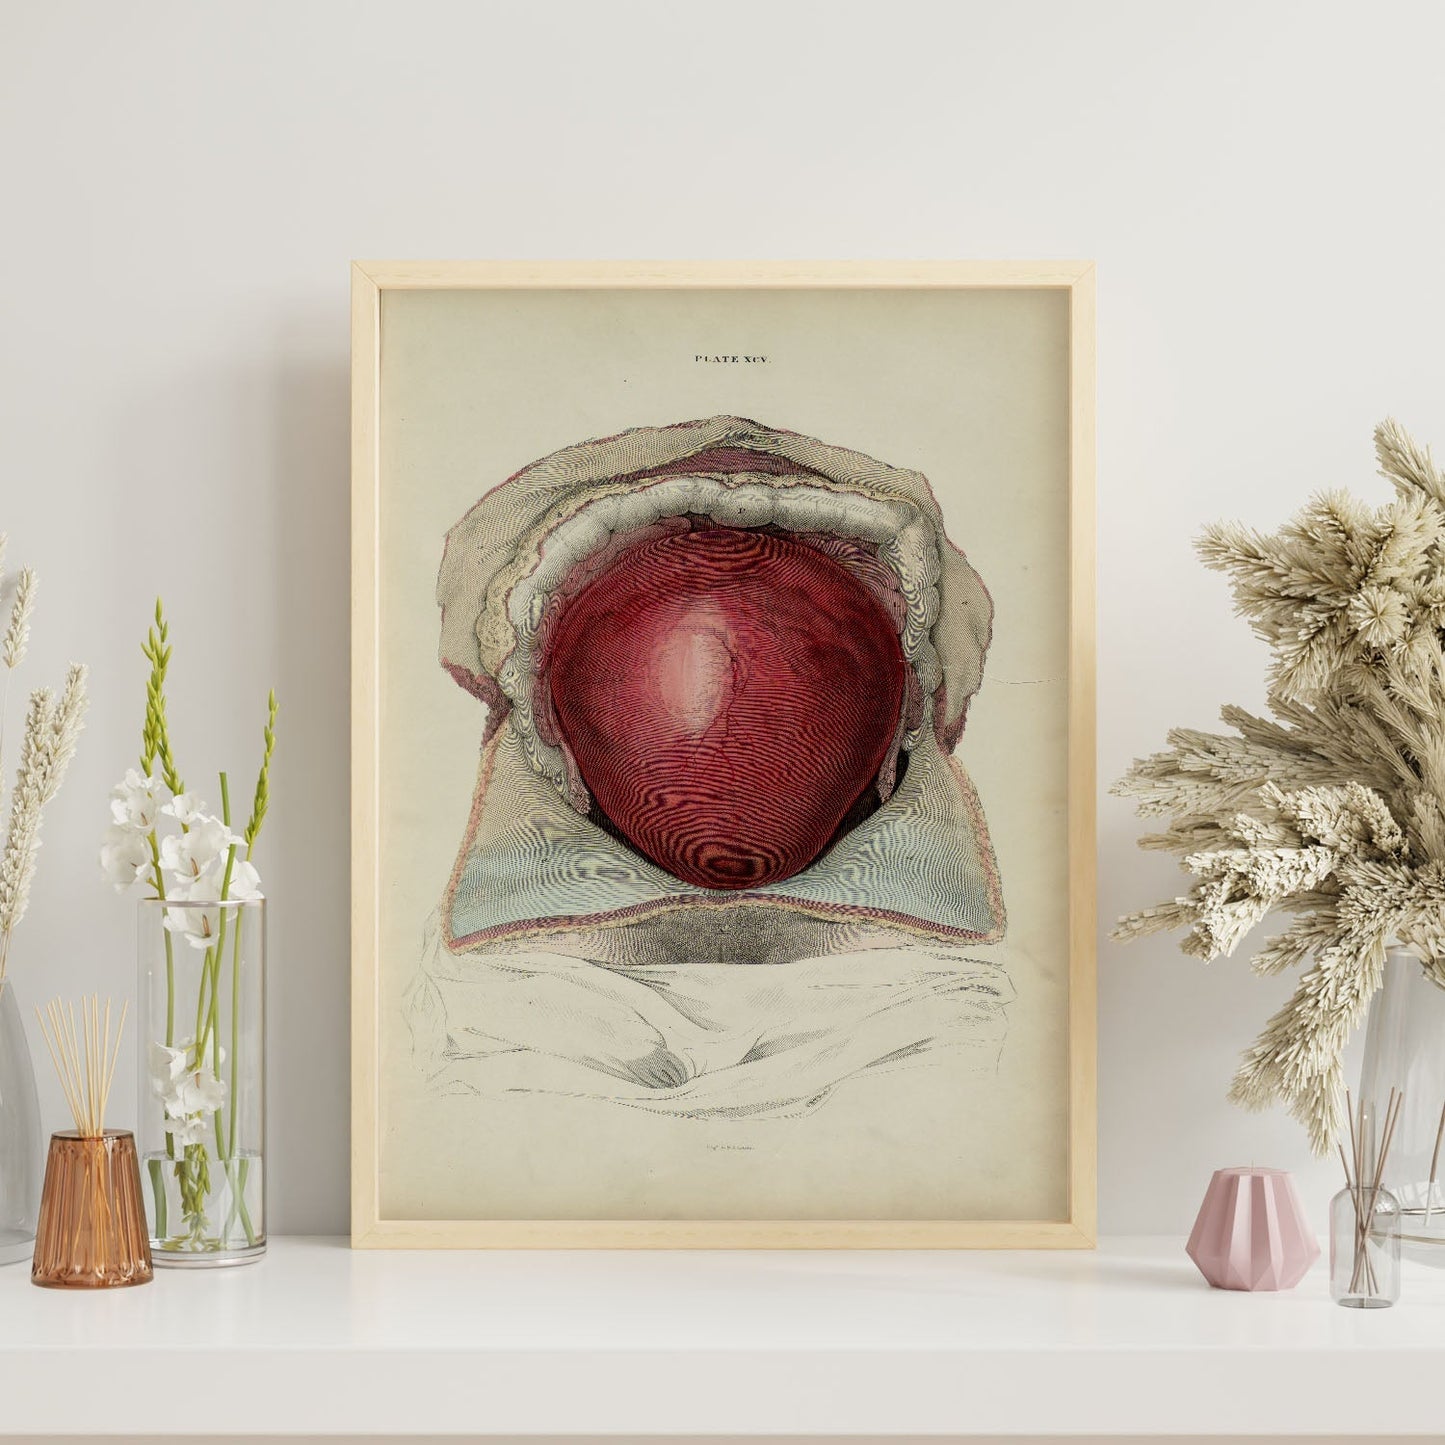 Gravid uterus-Artwork-Nacnic-Nacnic Estudio SL